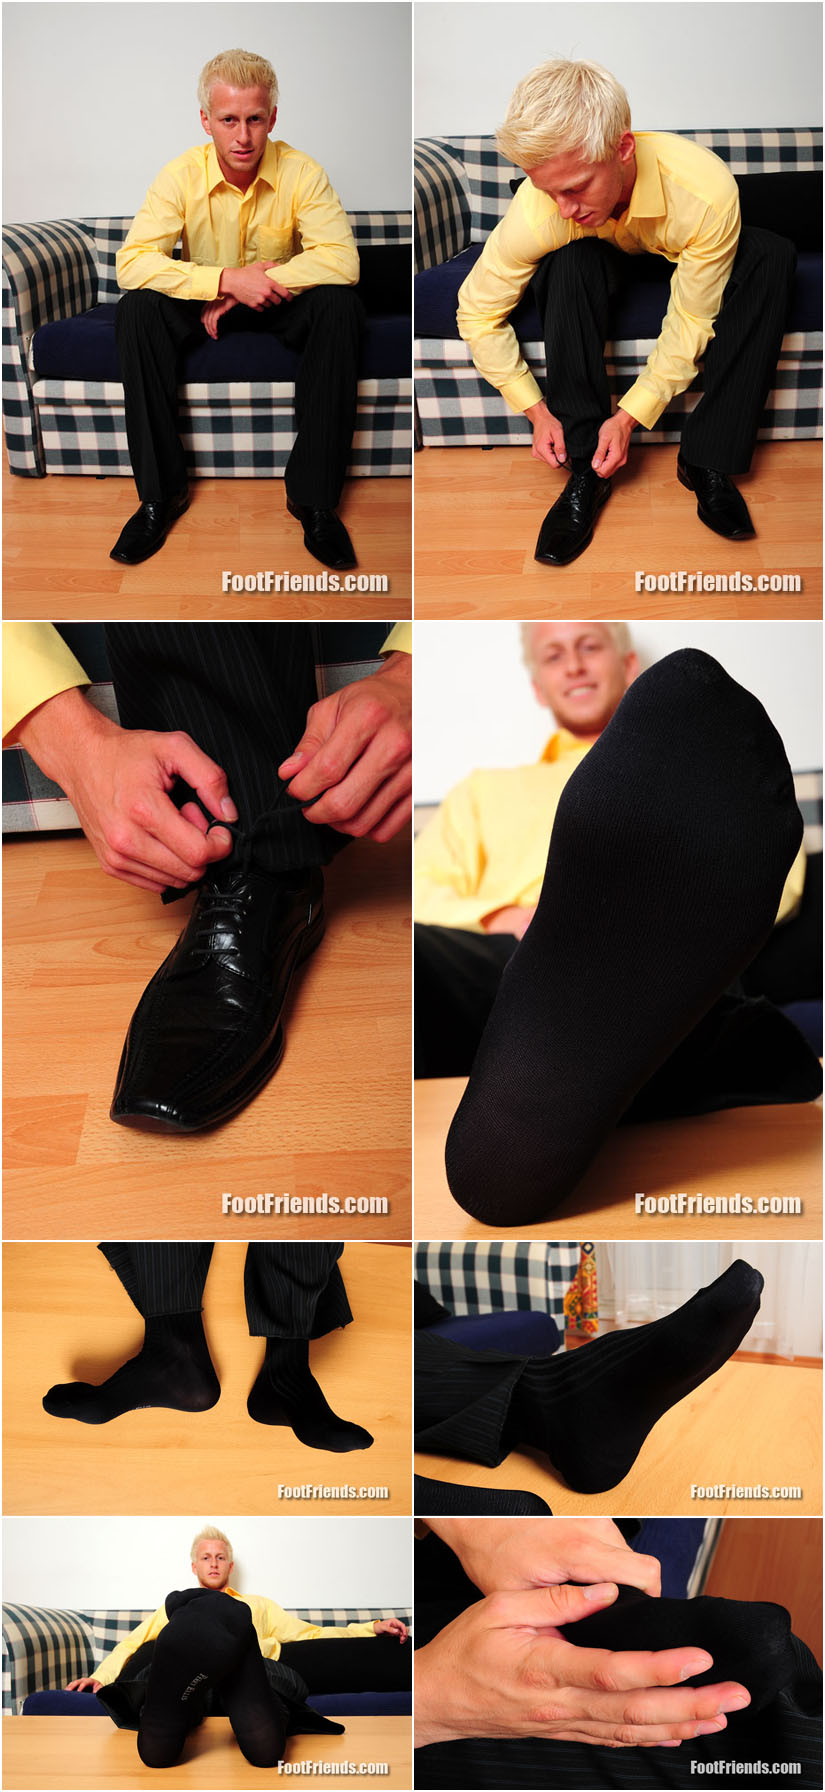 Amateur male feet in dark dress socks